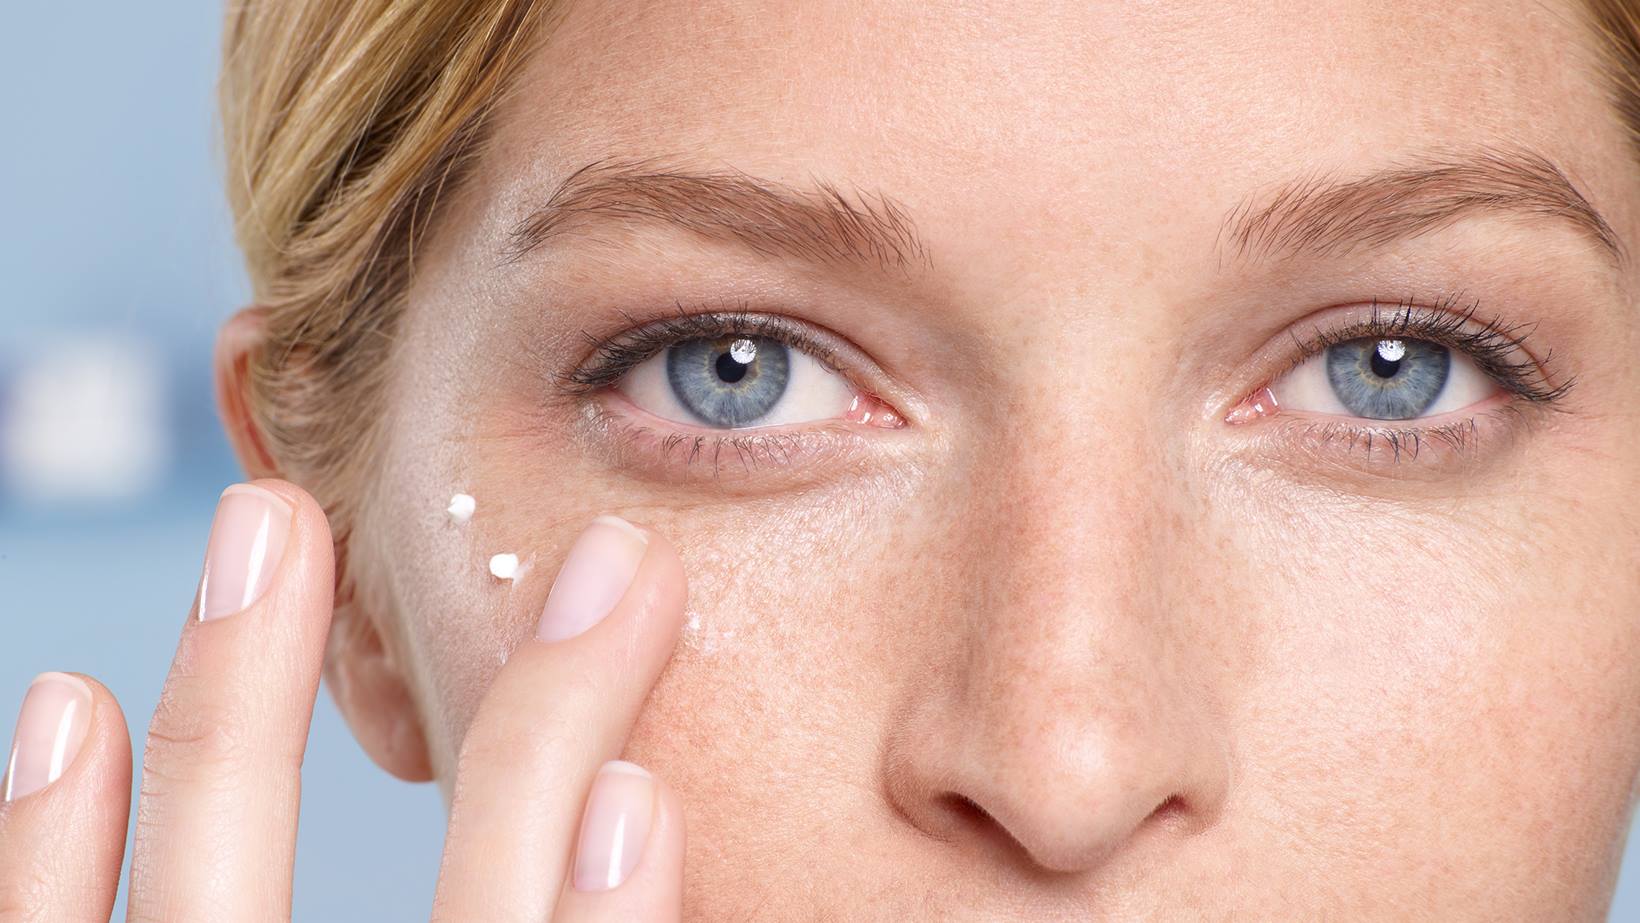 Kem Dưỡng Mắt Clinique All About Eyes Rich an toàn khi sử dụng cho da vùng mắt nhạy cảm